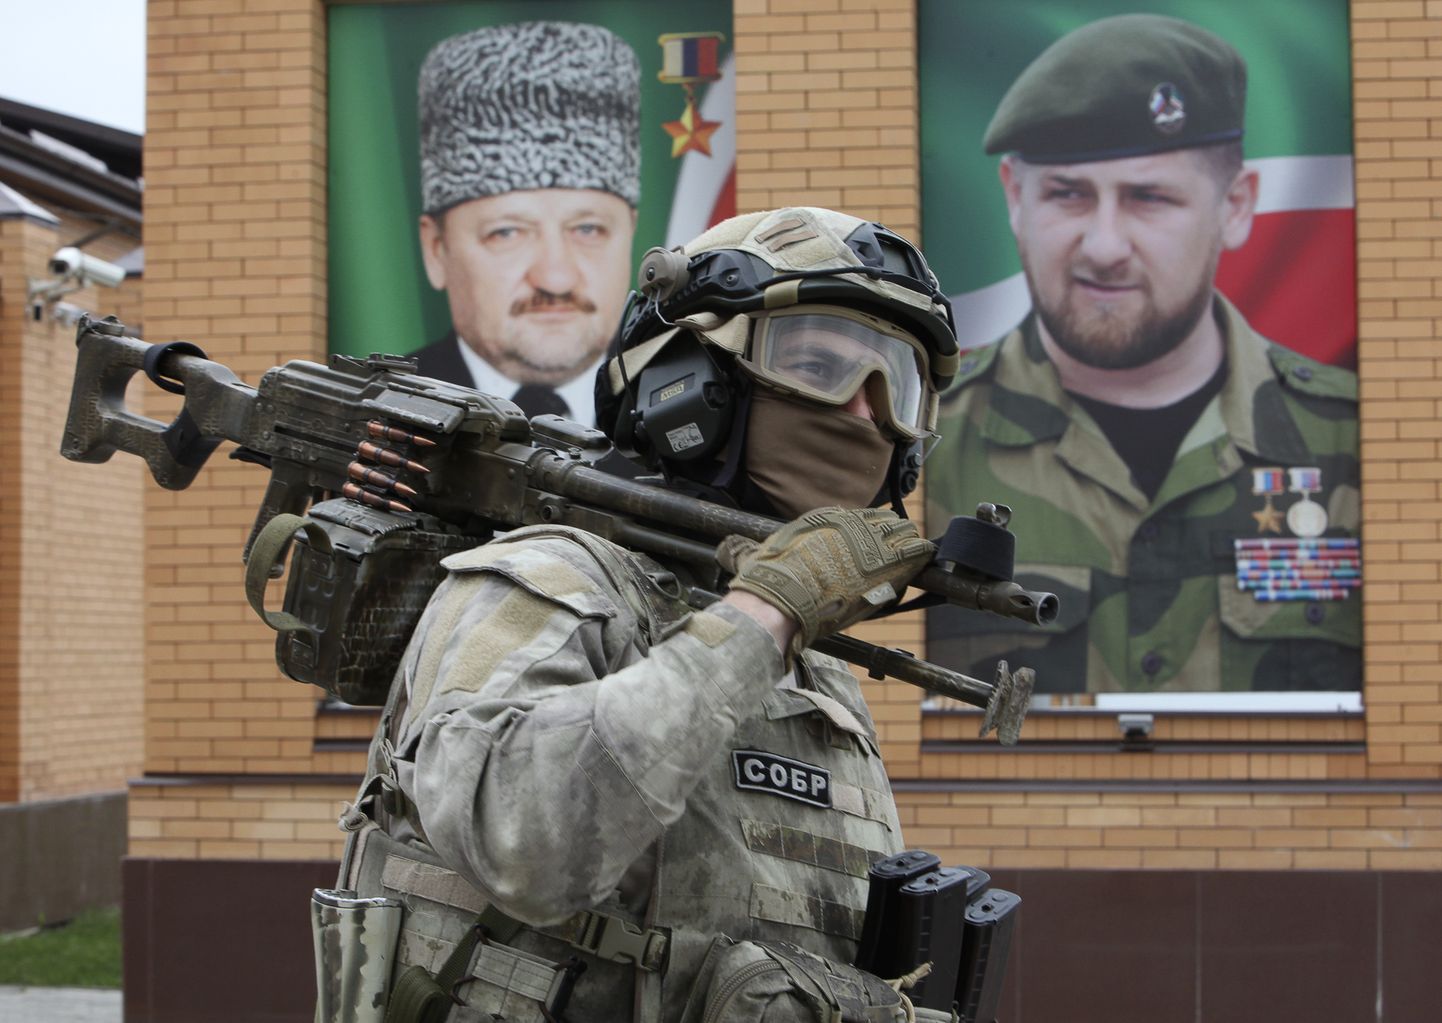 Член группы быстрого реагирования «СОБР», подчиняющейся российскому Министерству внутренних дел. На заднем плане портрет президента Чечни Рамзана Кадырова (справа) и его отца Ахмада Кадырова (справа), предыдущего руководителя Чечни, погибшего в 2004 году в результате теракта.